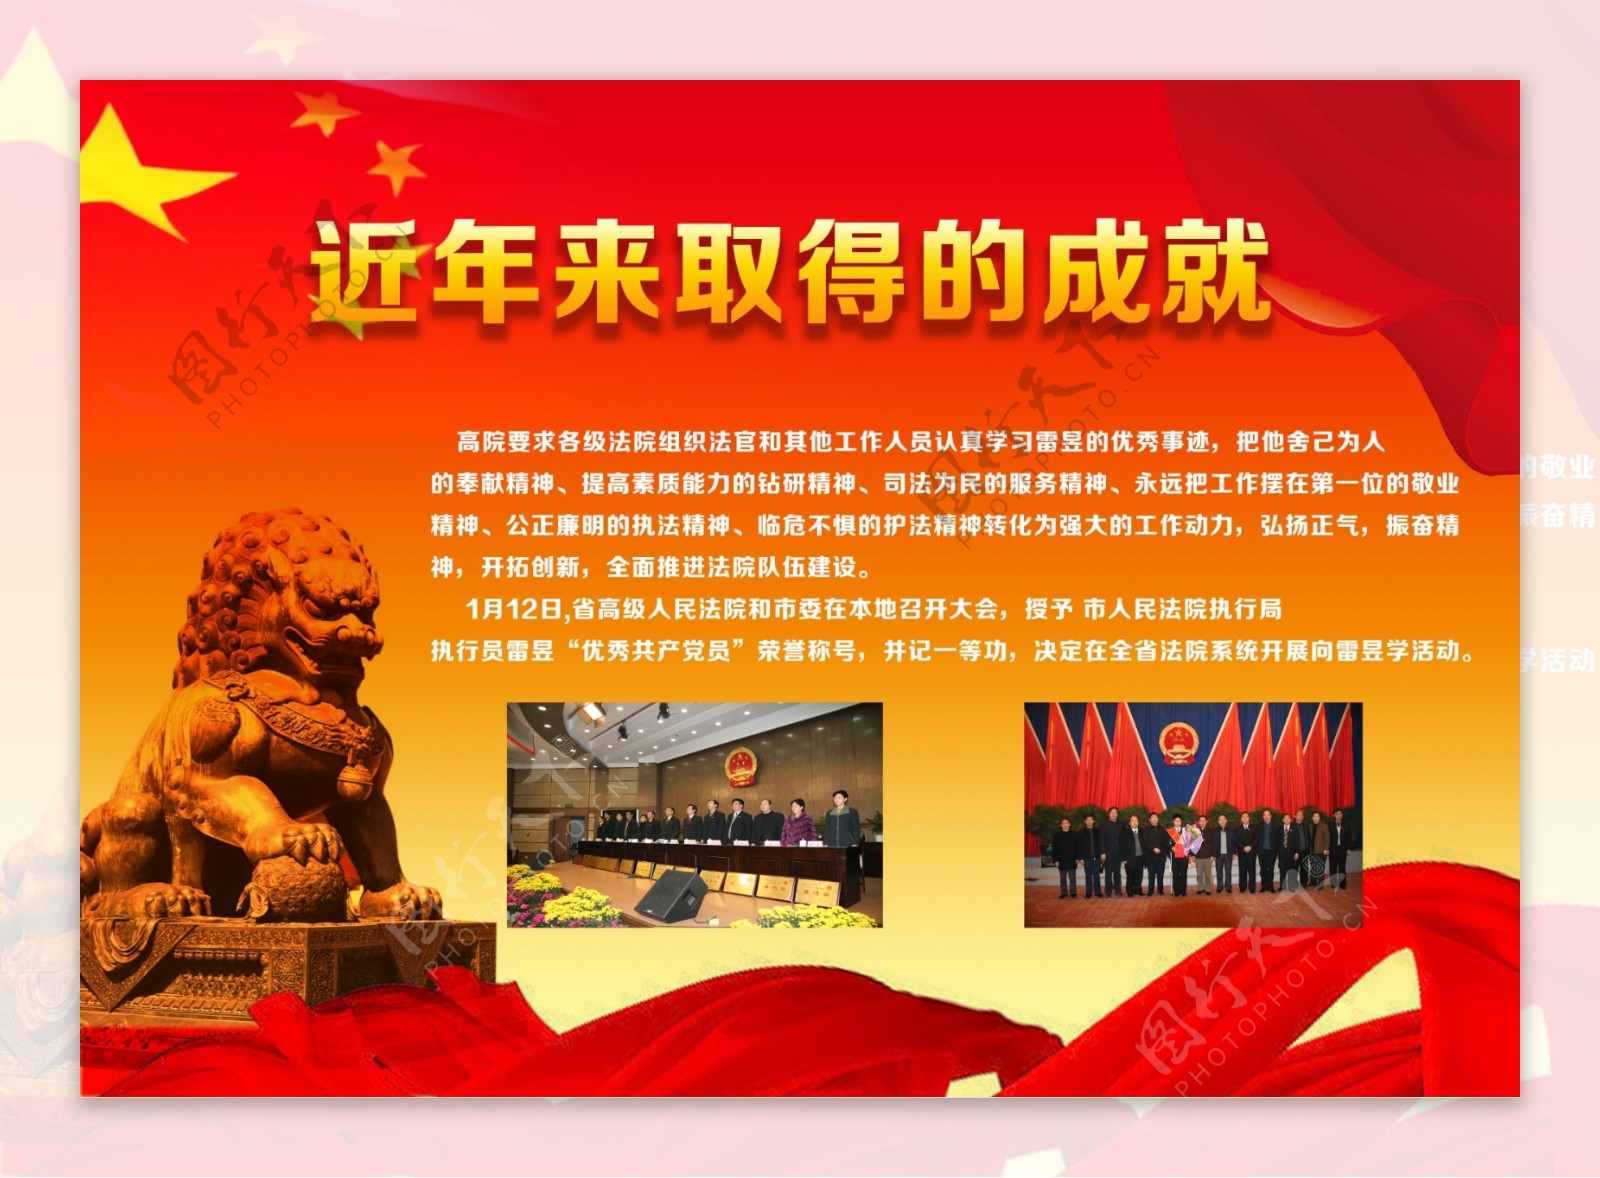 党政文化宣传中国梦海报展板